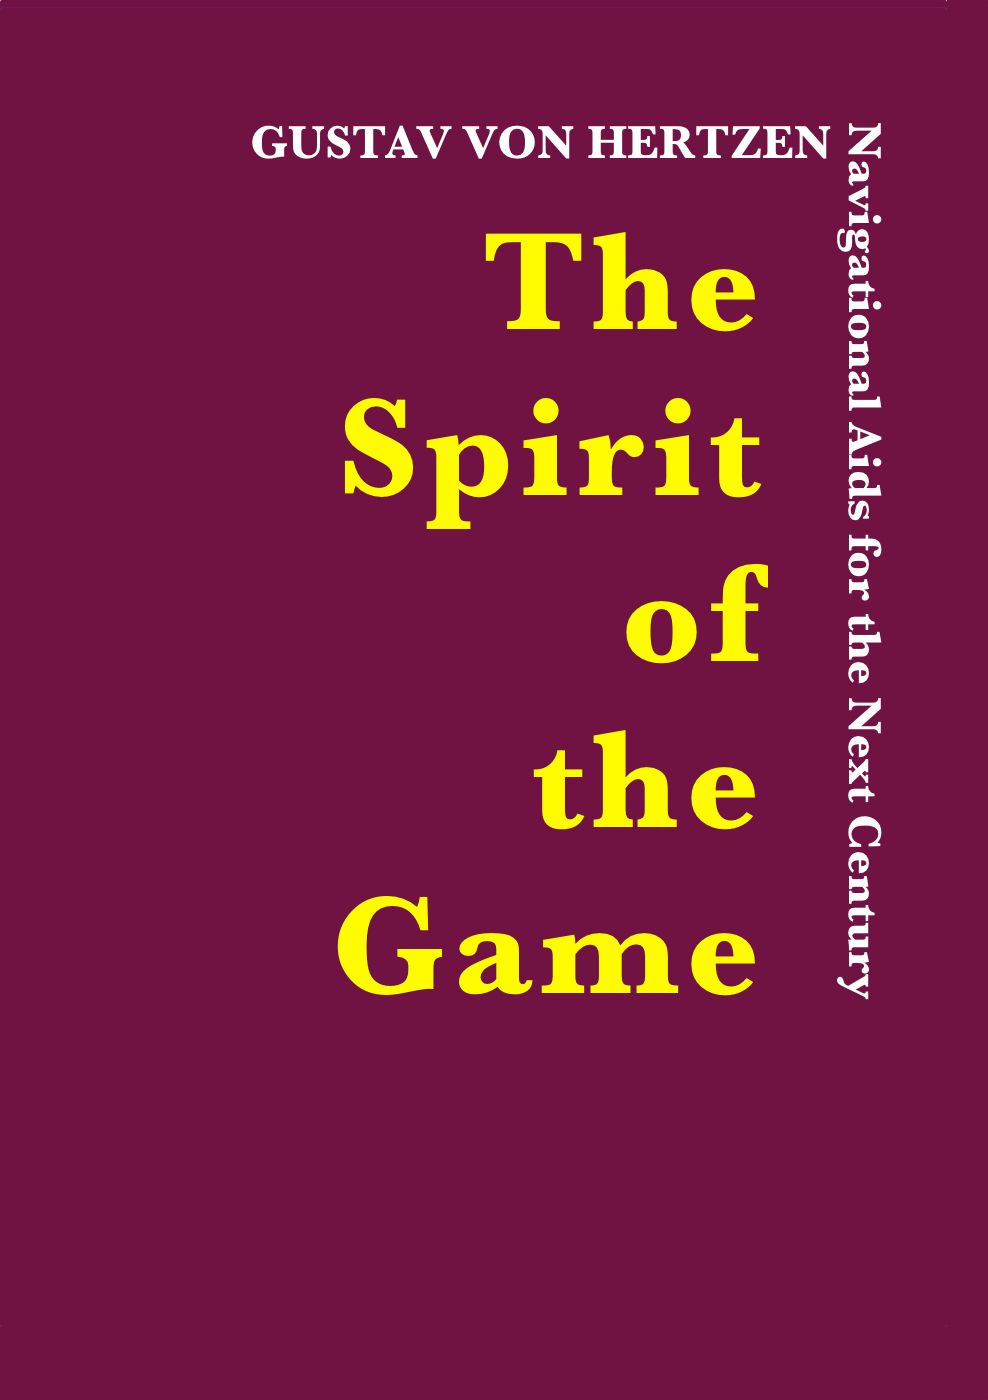 The Spirit of the Game, eBook by Gustav von Hertzen